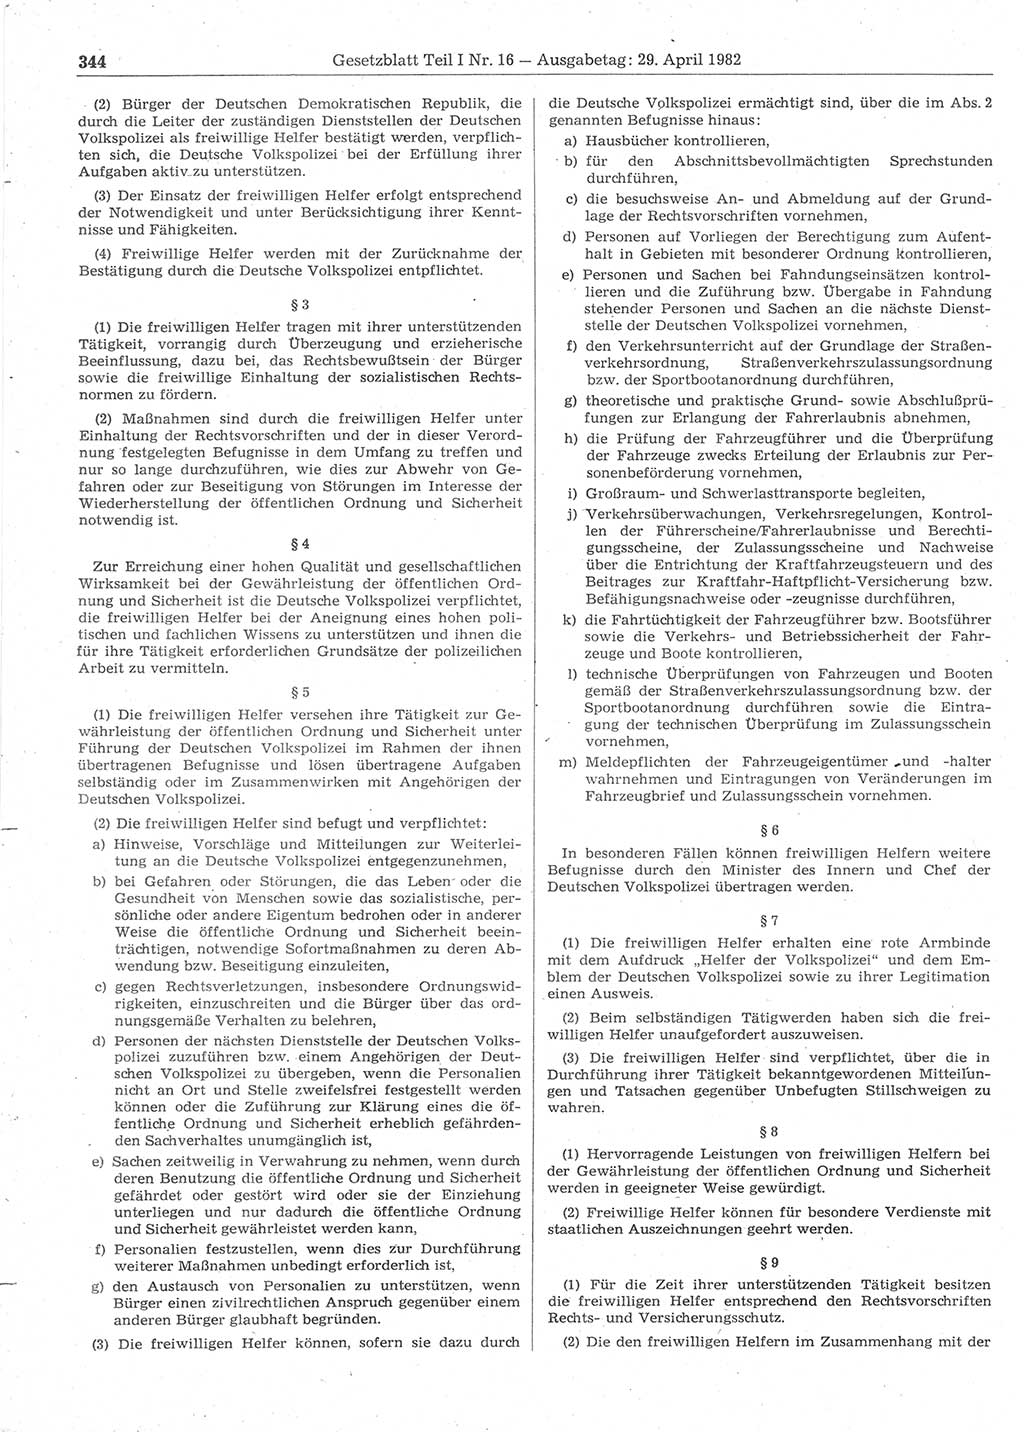 Gesetzblatt (GBl.) der Deutschen Demokratischen Republik (DDR) Teil Ⅰ 1982, Seite 344 (GBl. DDR Ⅰ 1982, S. 344)